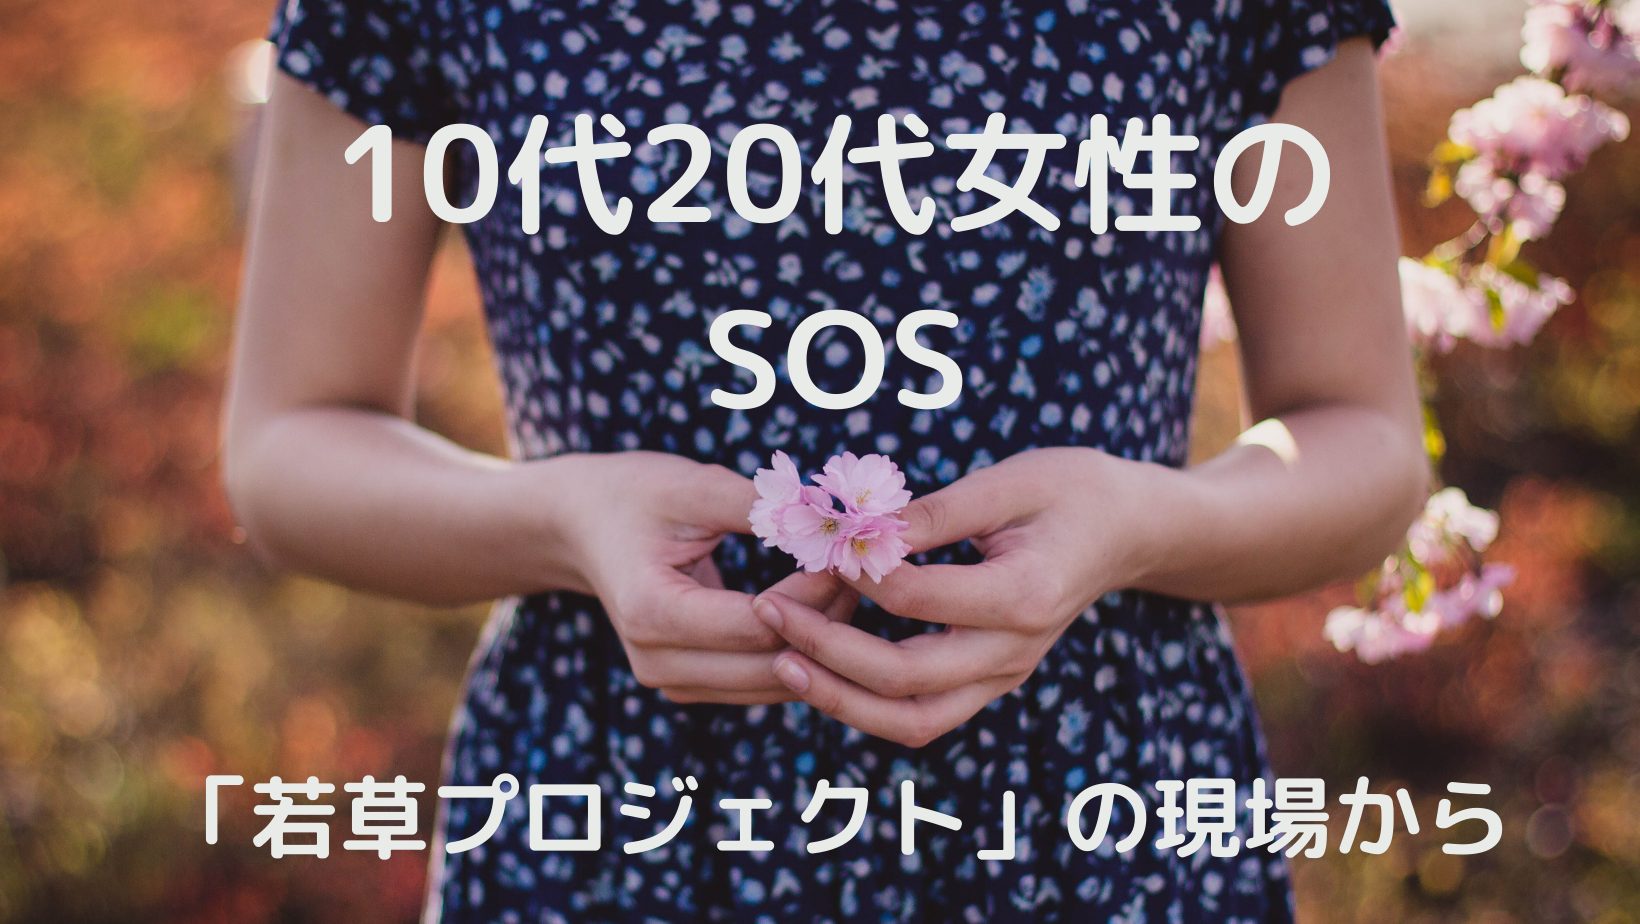 3/31【世界を学ぼう】10代20代女性のSOS〜「若草プロジェクト」の現場から